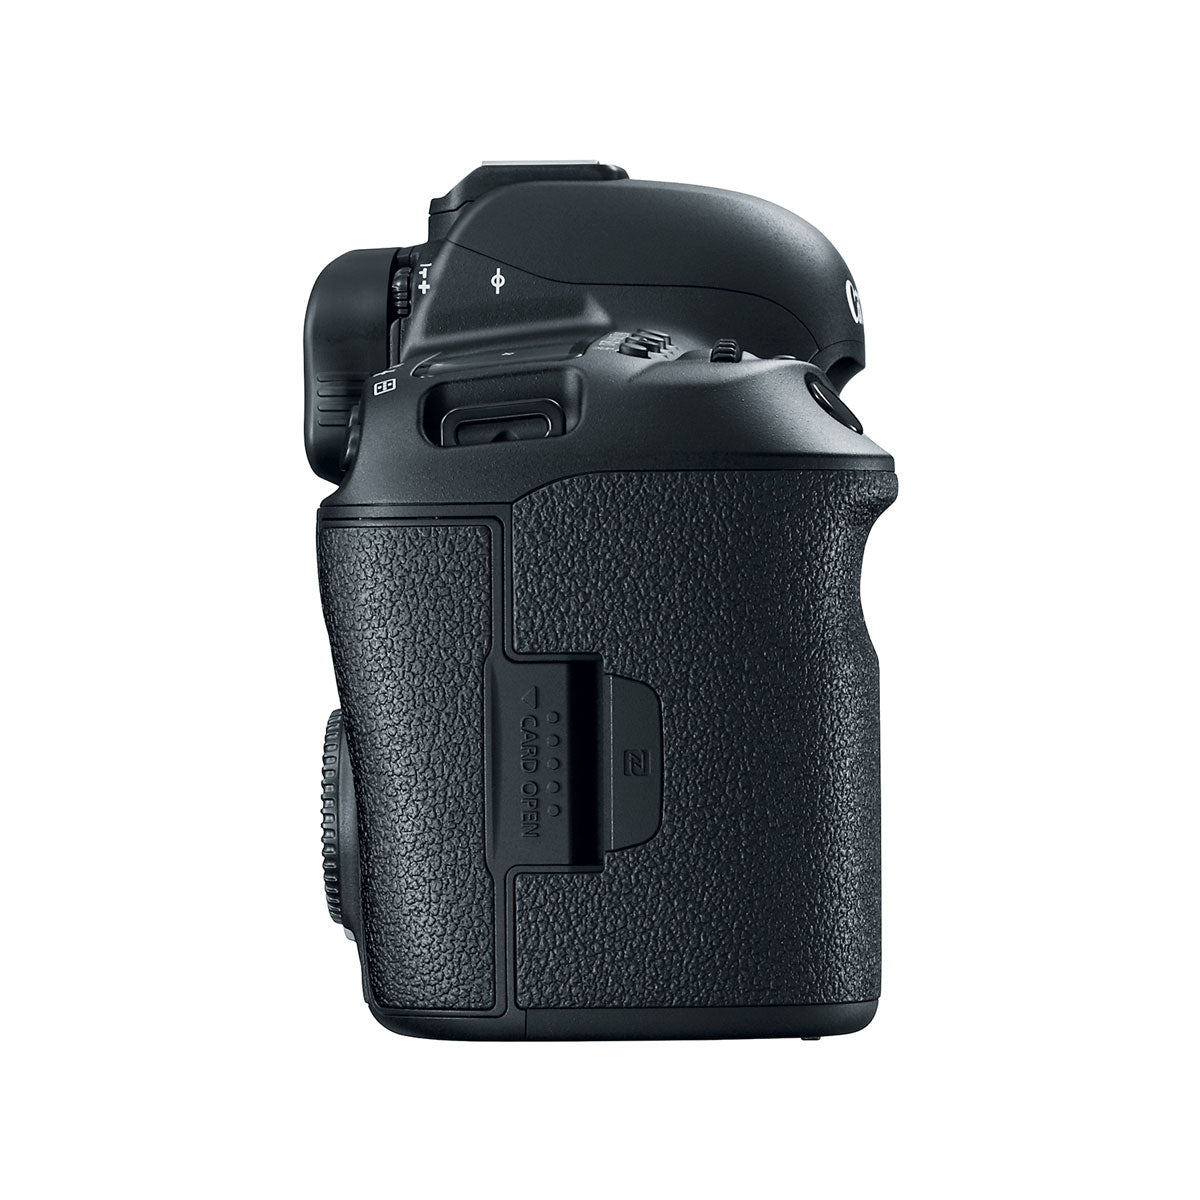 Canon EOS 5D Mark IV Digital Camera Body Kit